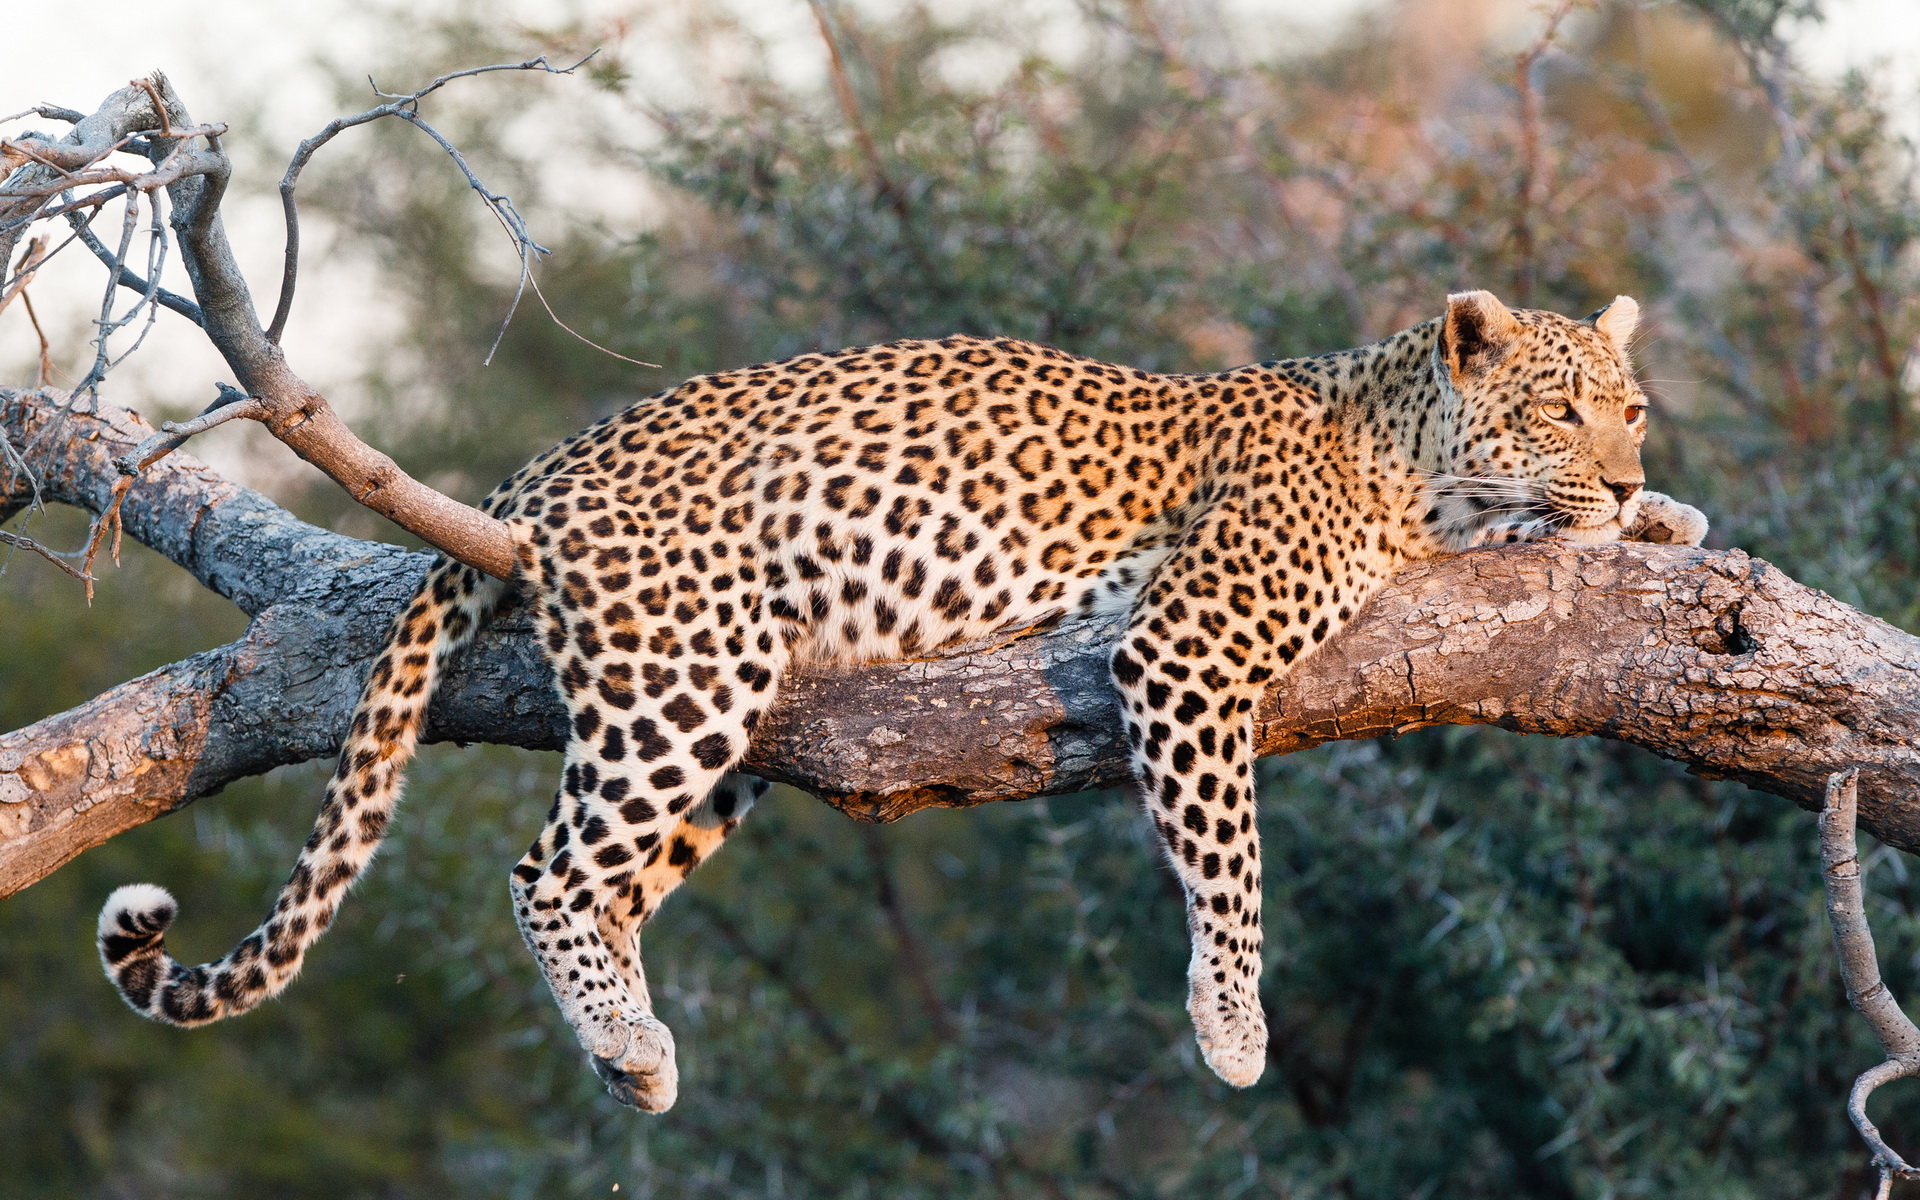 Descarga gratuita de fondo de pantalla para móvil de Leopardo, Gatos, Naturaleza, Animales.